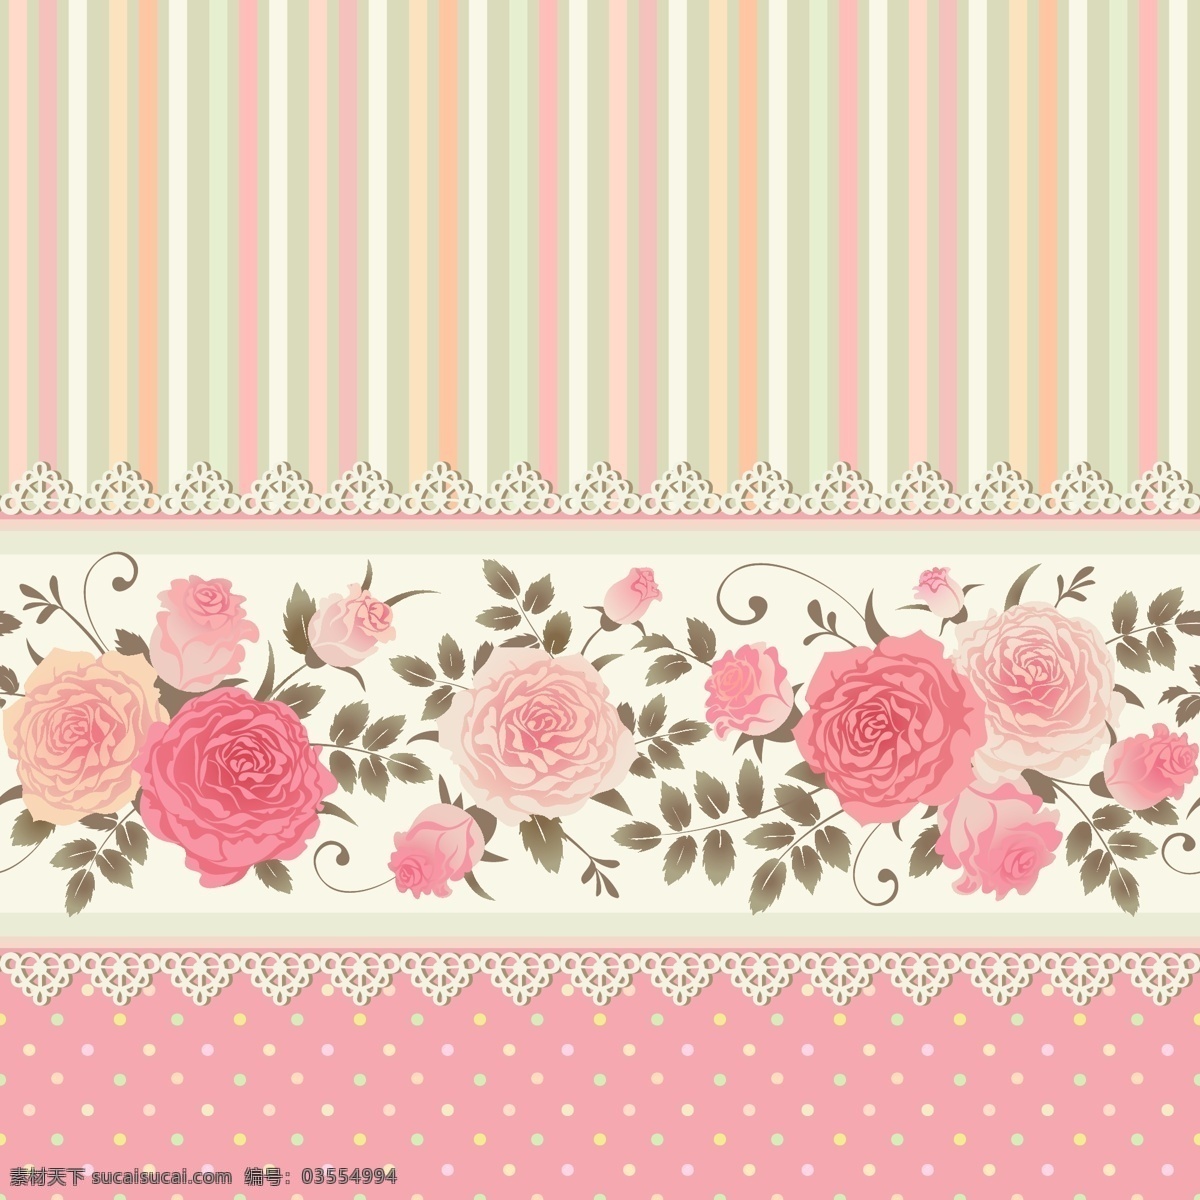 粉色 玫瑰花 背景 eps格式 花卉 蕾丝边 矢量图 条纹 植物 矢量 水玉点 花纹花边